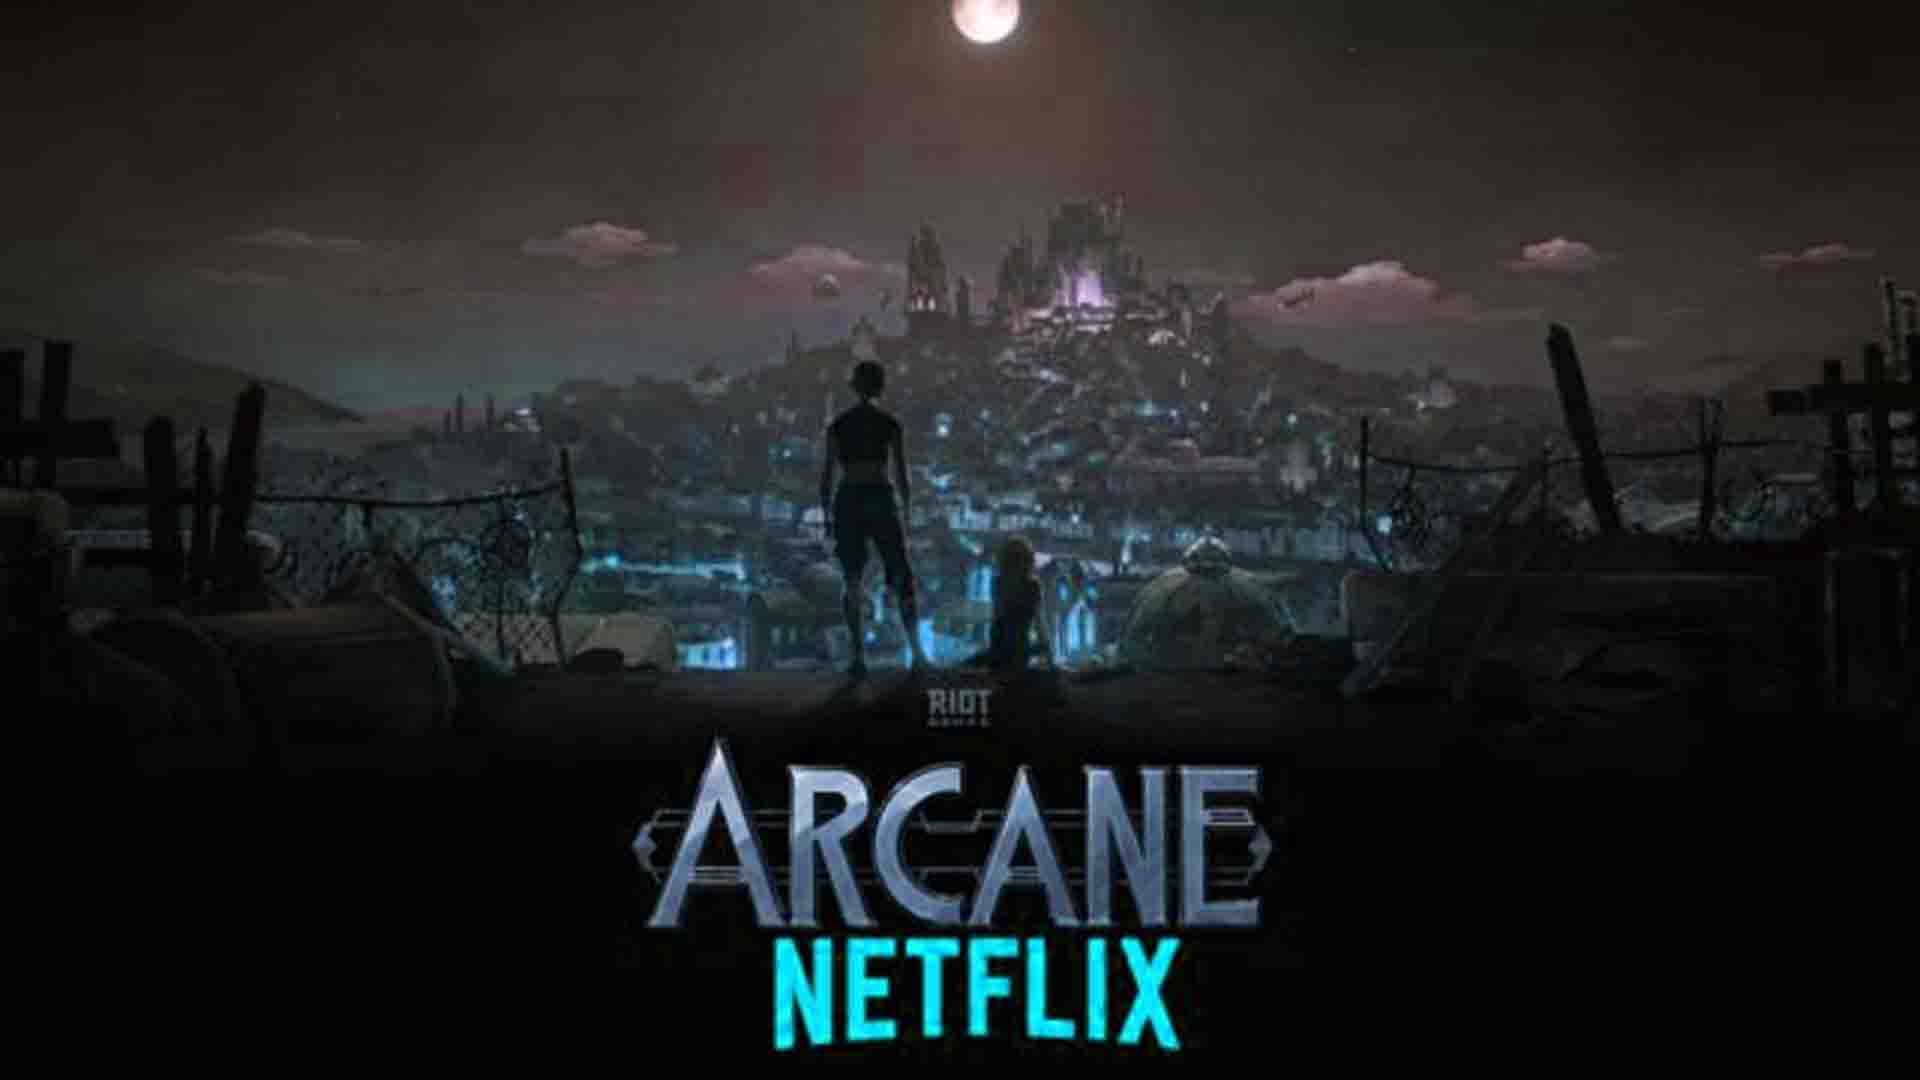 Netflix's Arcane